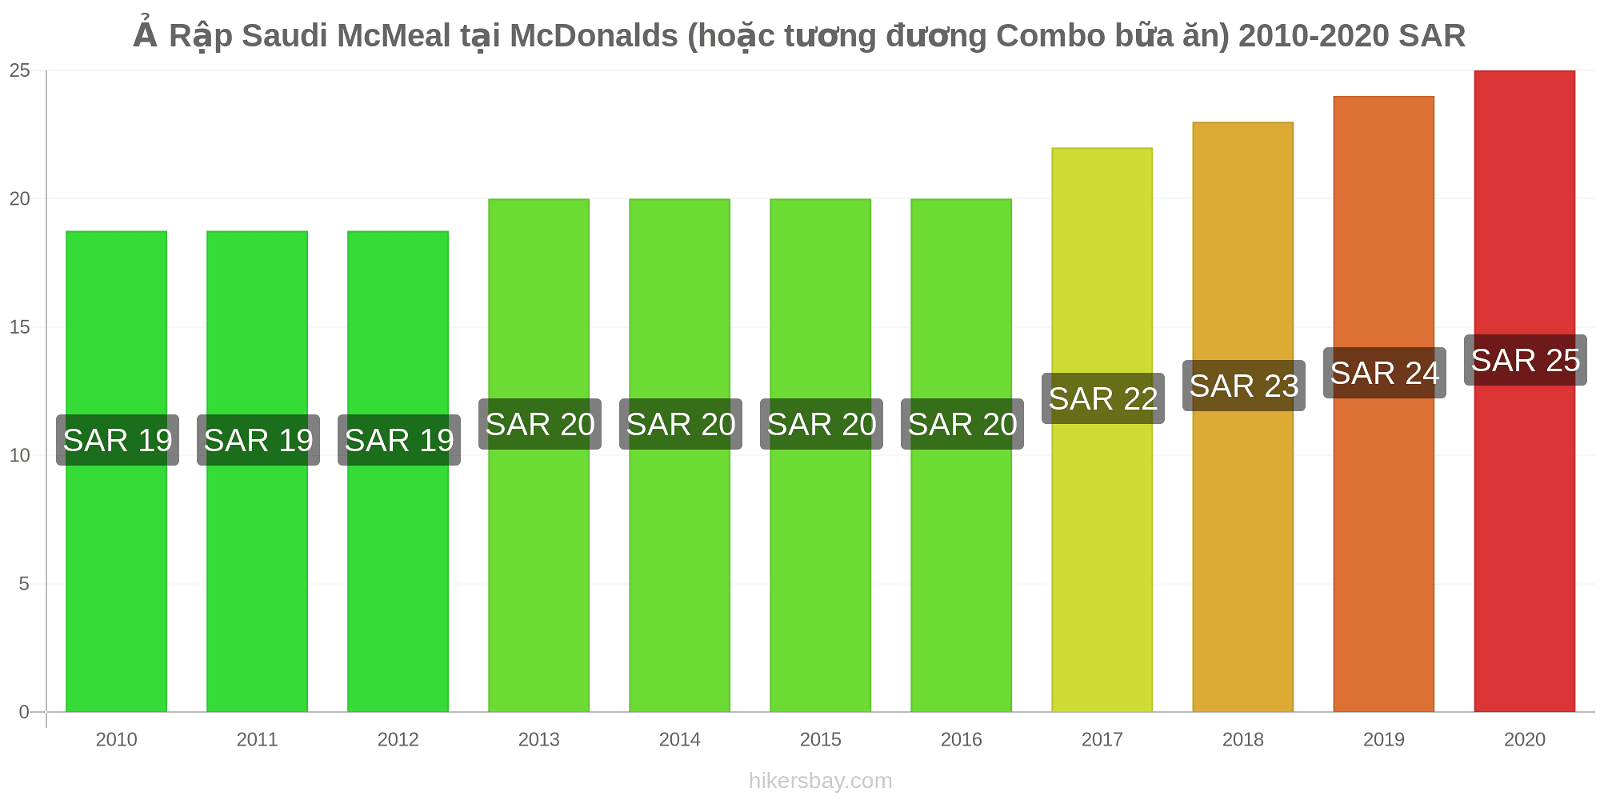 Ả Rập Saudi thay đổi giá McMeal tại McDonalds (hoặc tương đương Combo bữa ăn) hikersbay.com